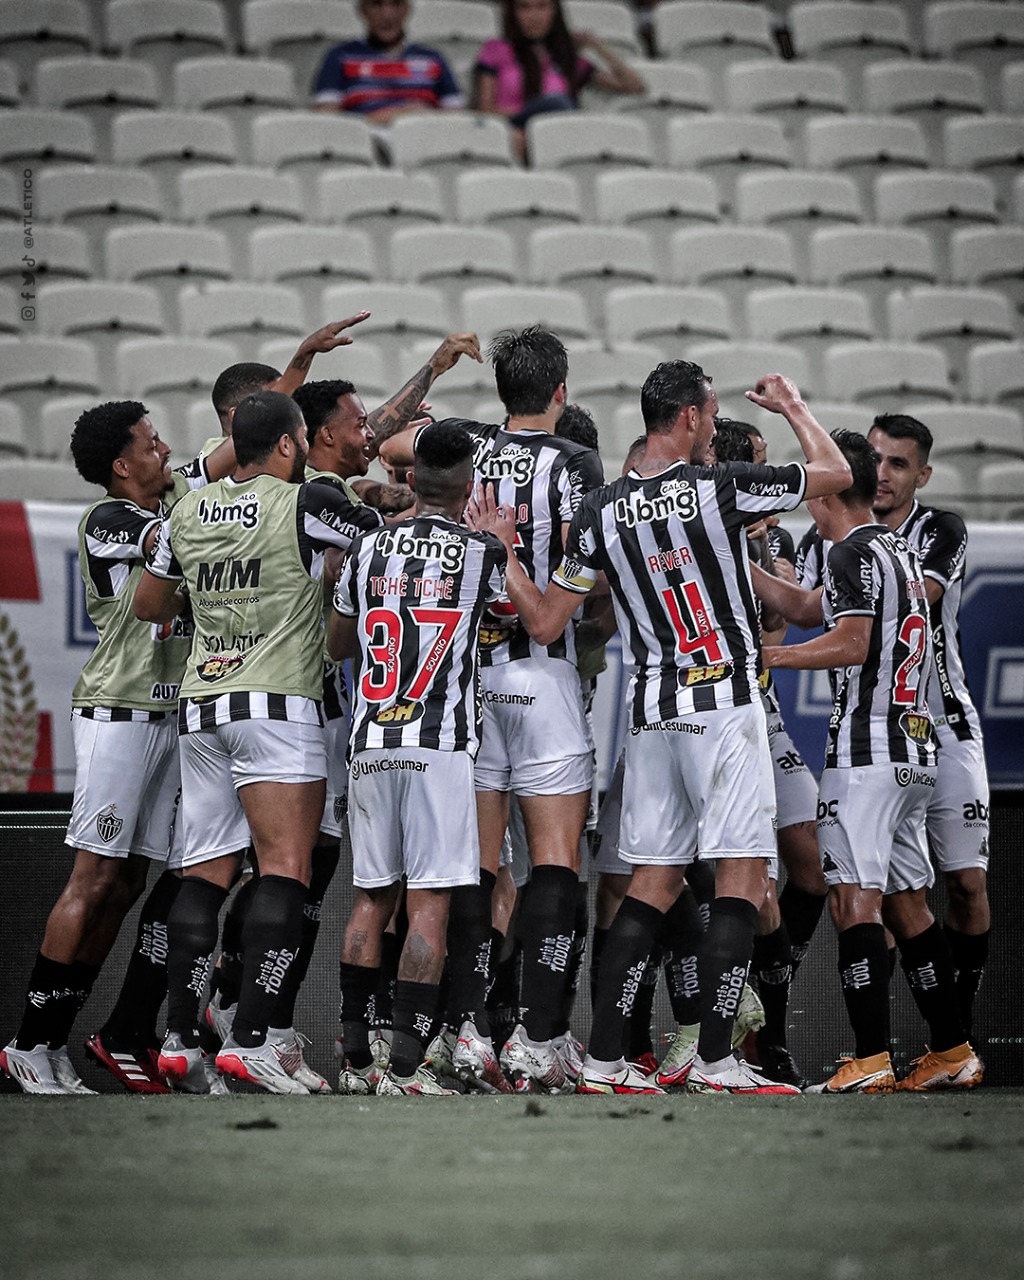 Jogo do Galo ao vivo para todo o - Clube Atlético Mineiro